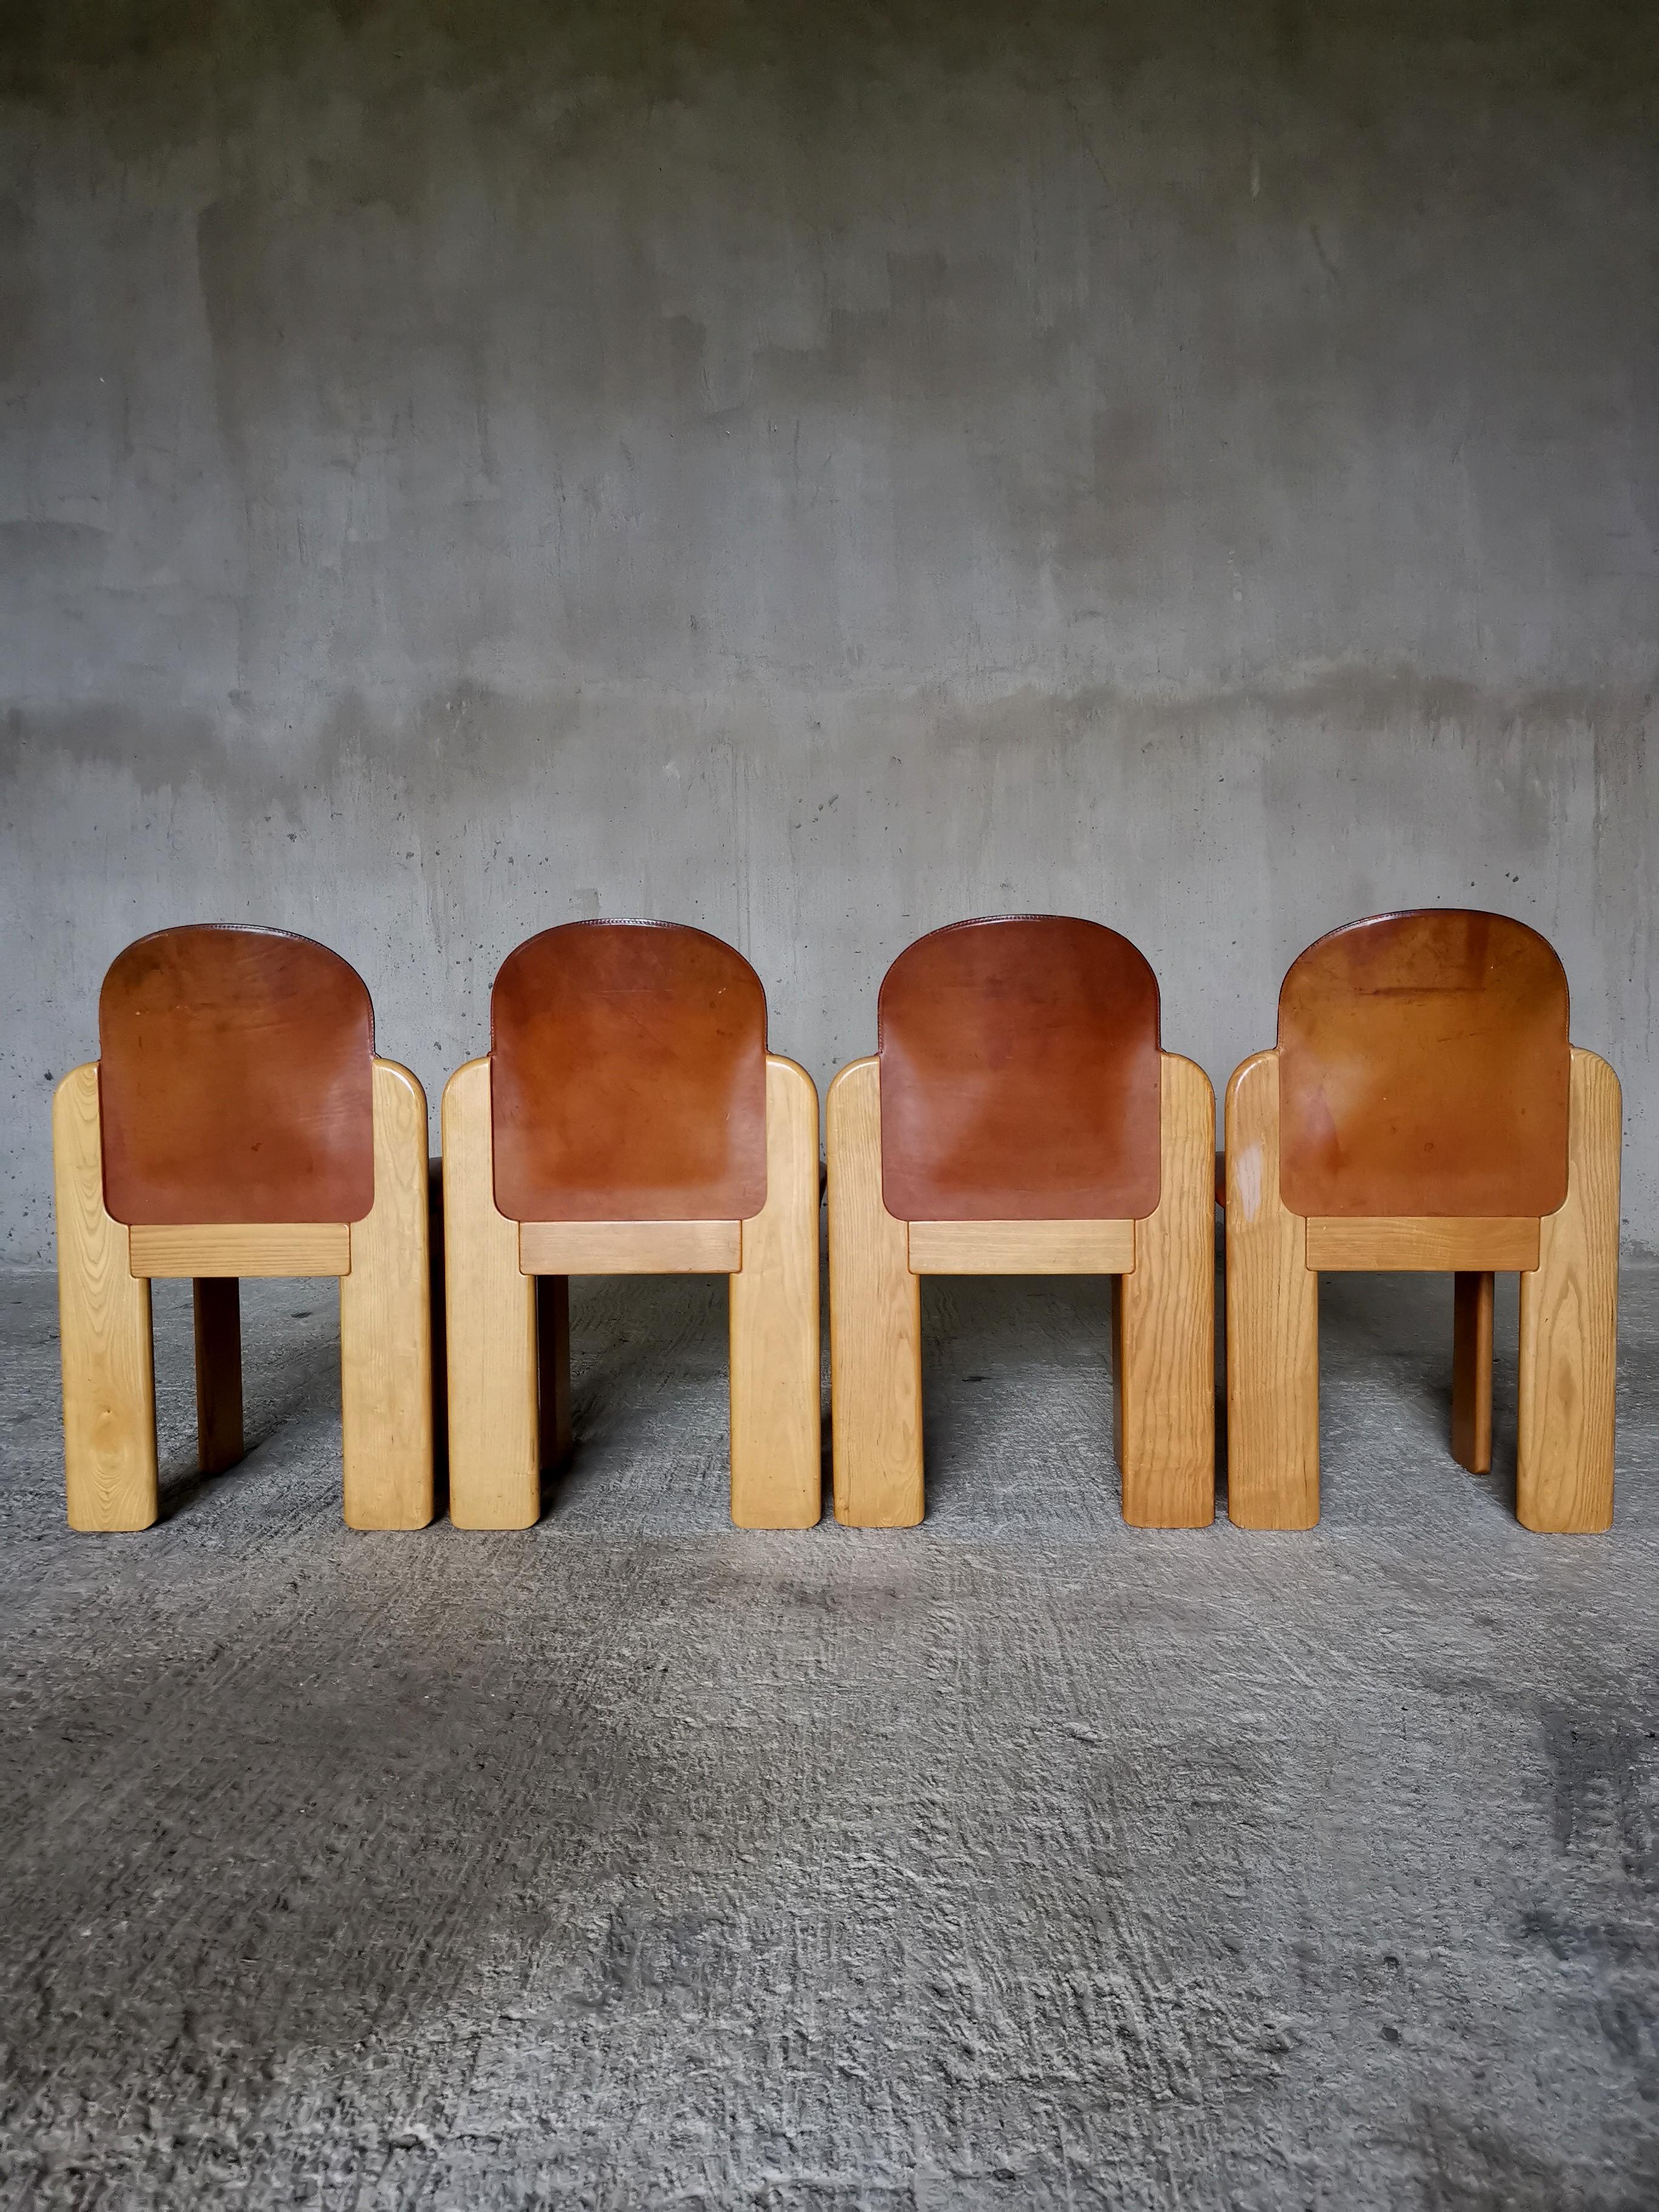 Cet ensemble de 4 chaises de salle à manger en bois de frêne et cuir cognac riche, conçu par l'Italien Silvio Coppola pour Fratelli Montina dans les années 1970, n'est pas un ensemble facile à trouver.
Encore moins dans cet état et avec une patine